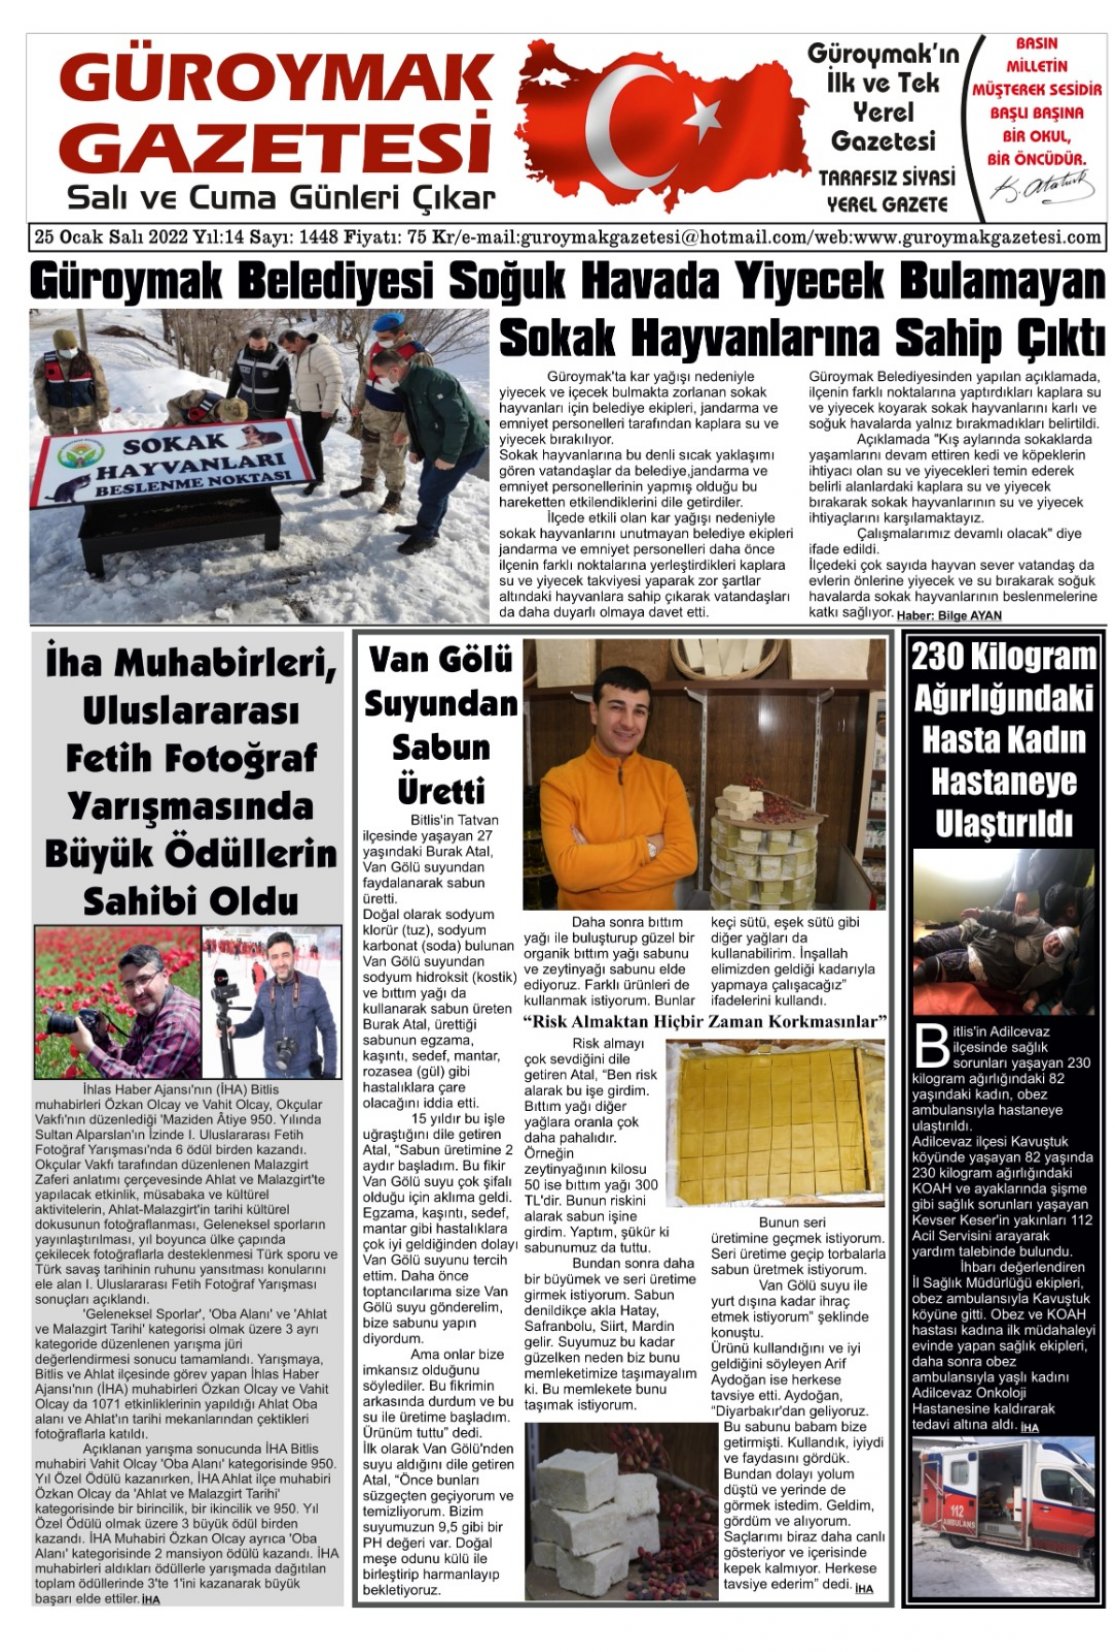 Güroymak Gazetesi WhatsApp Image 2022-01-25 at 00.02.38.jpeg Sayılı Gazete Küpürü